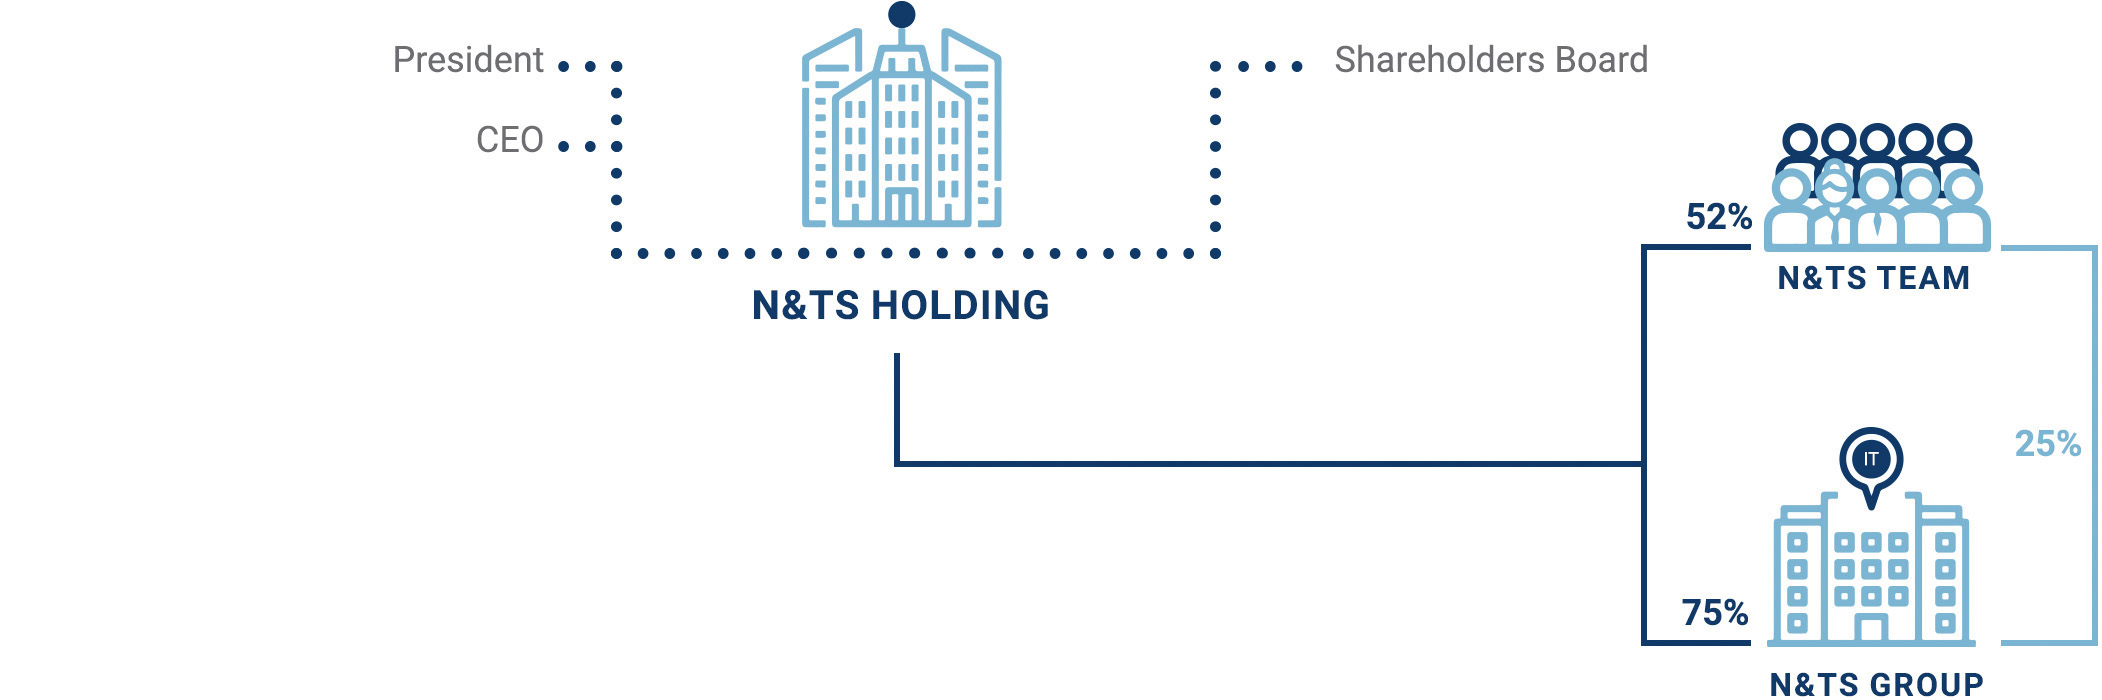 Diagramma della struttura organizzativa di N&TS Holding che mostra le relazioni e le percentuali di possesso tra la holding, il team N&TS e il N&TS GROUP Italia